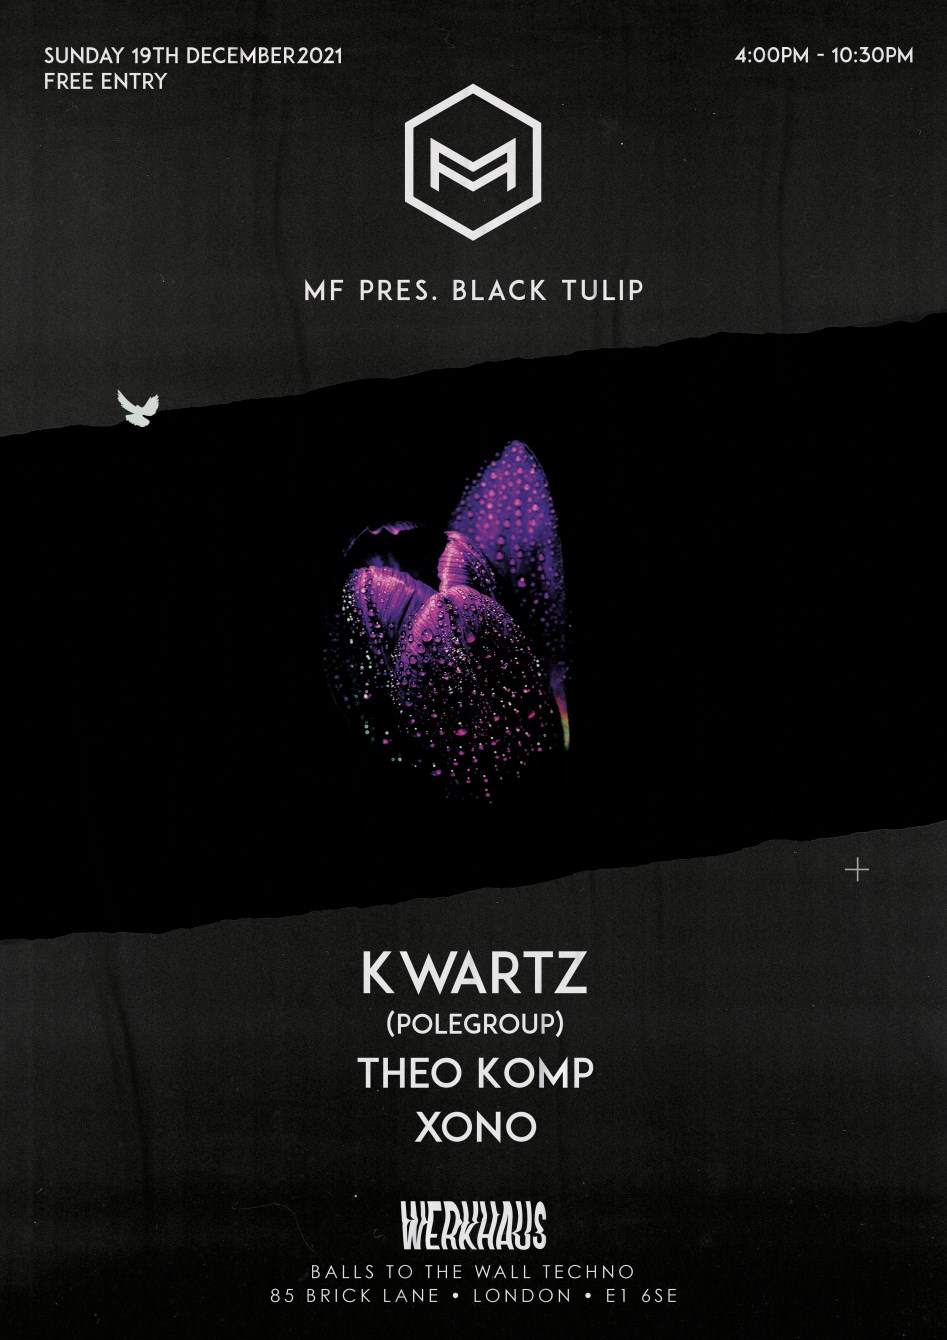 MF Pres. Black Tulip with Kwartz - Página frontal